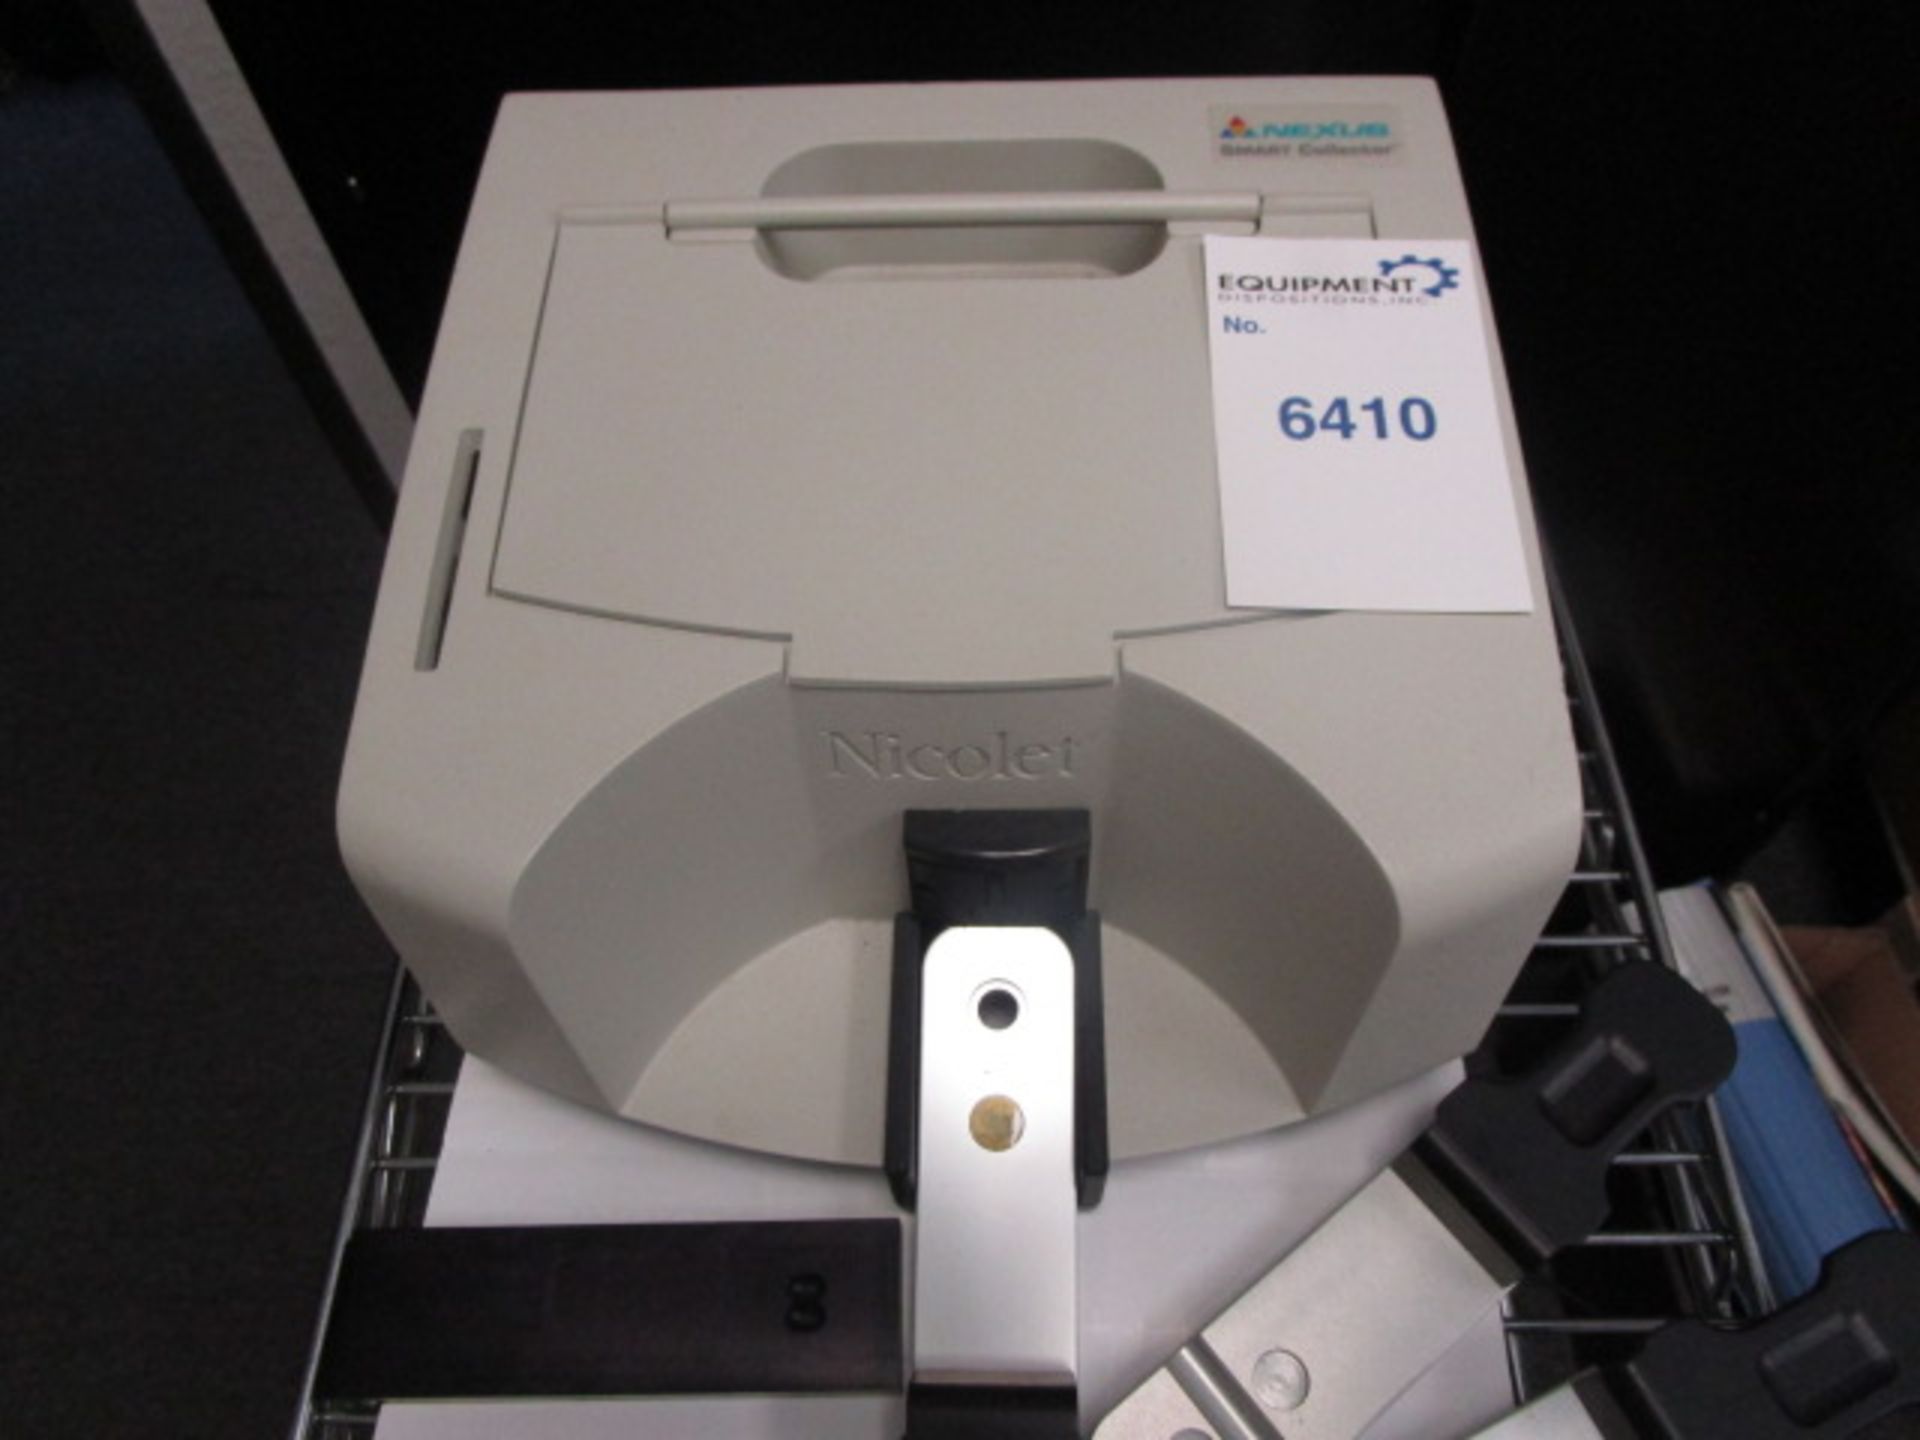 Thermo Nicolet FTIR Detector Nexus Smart Collector, Model 0031-999